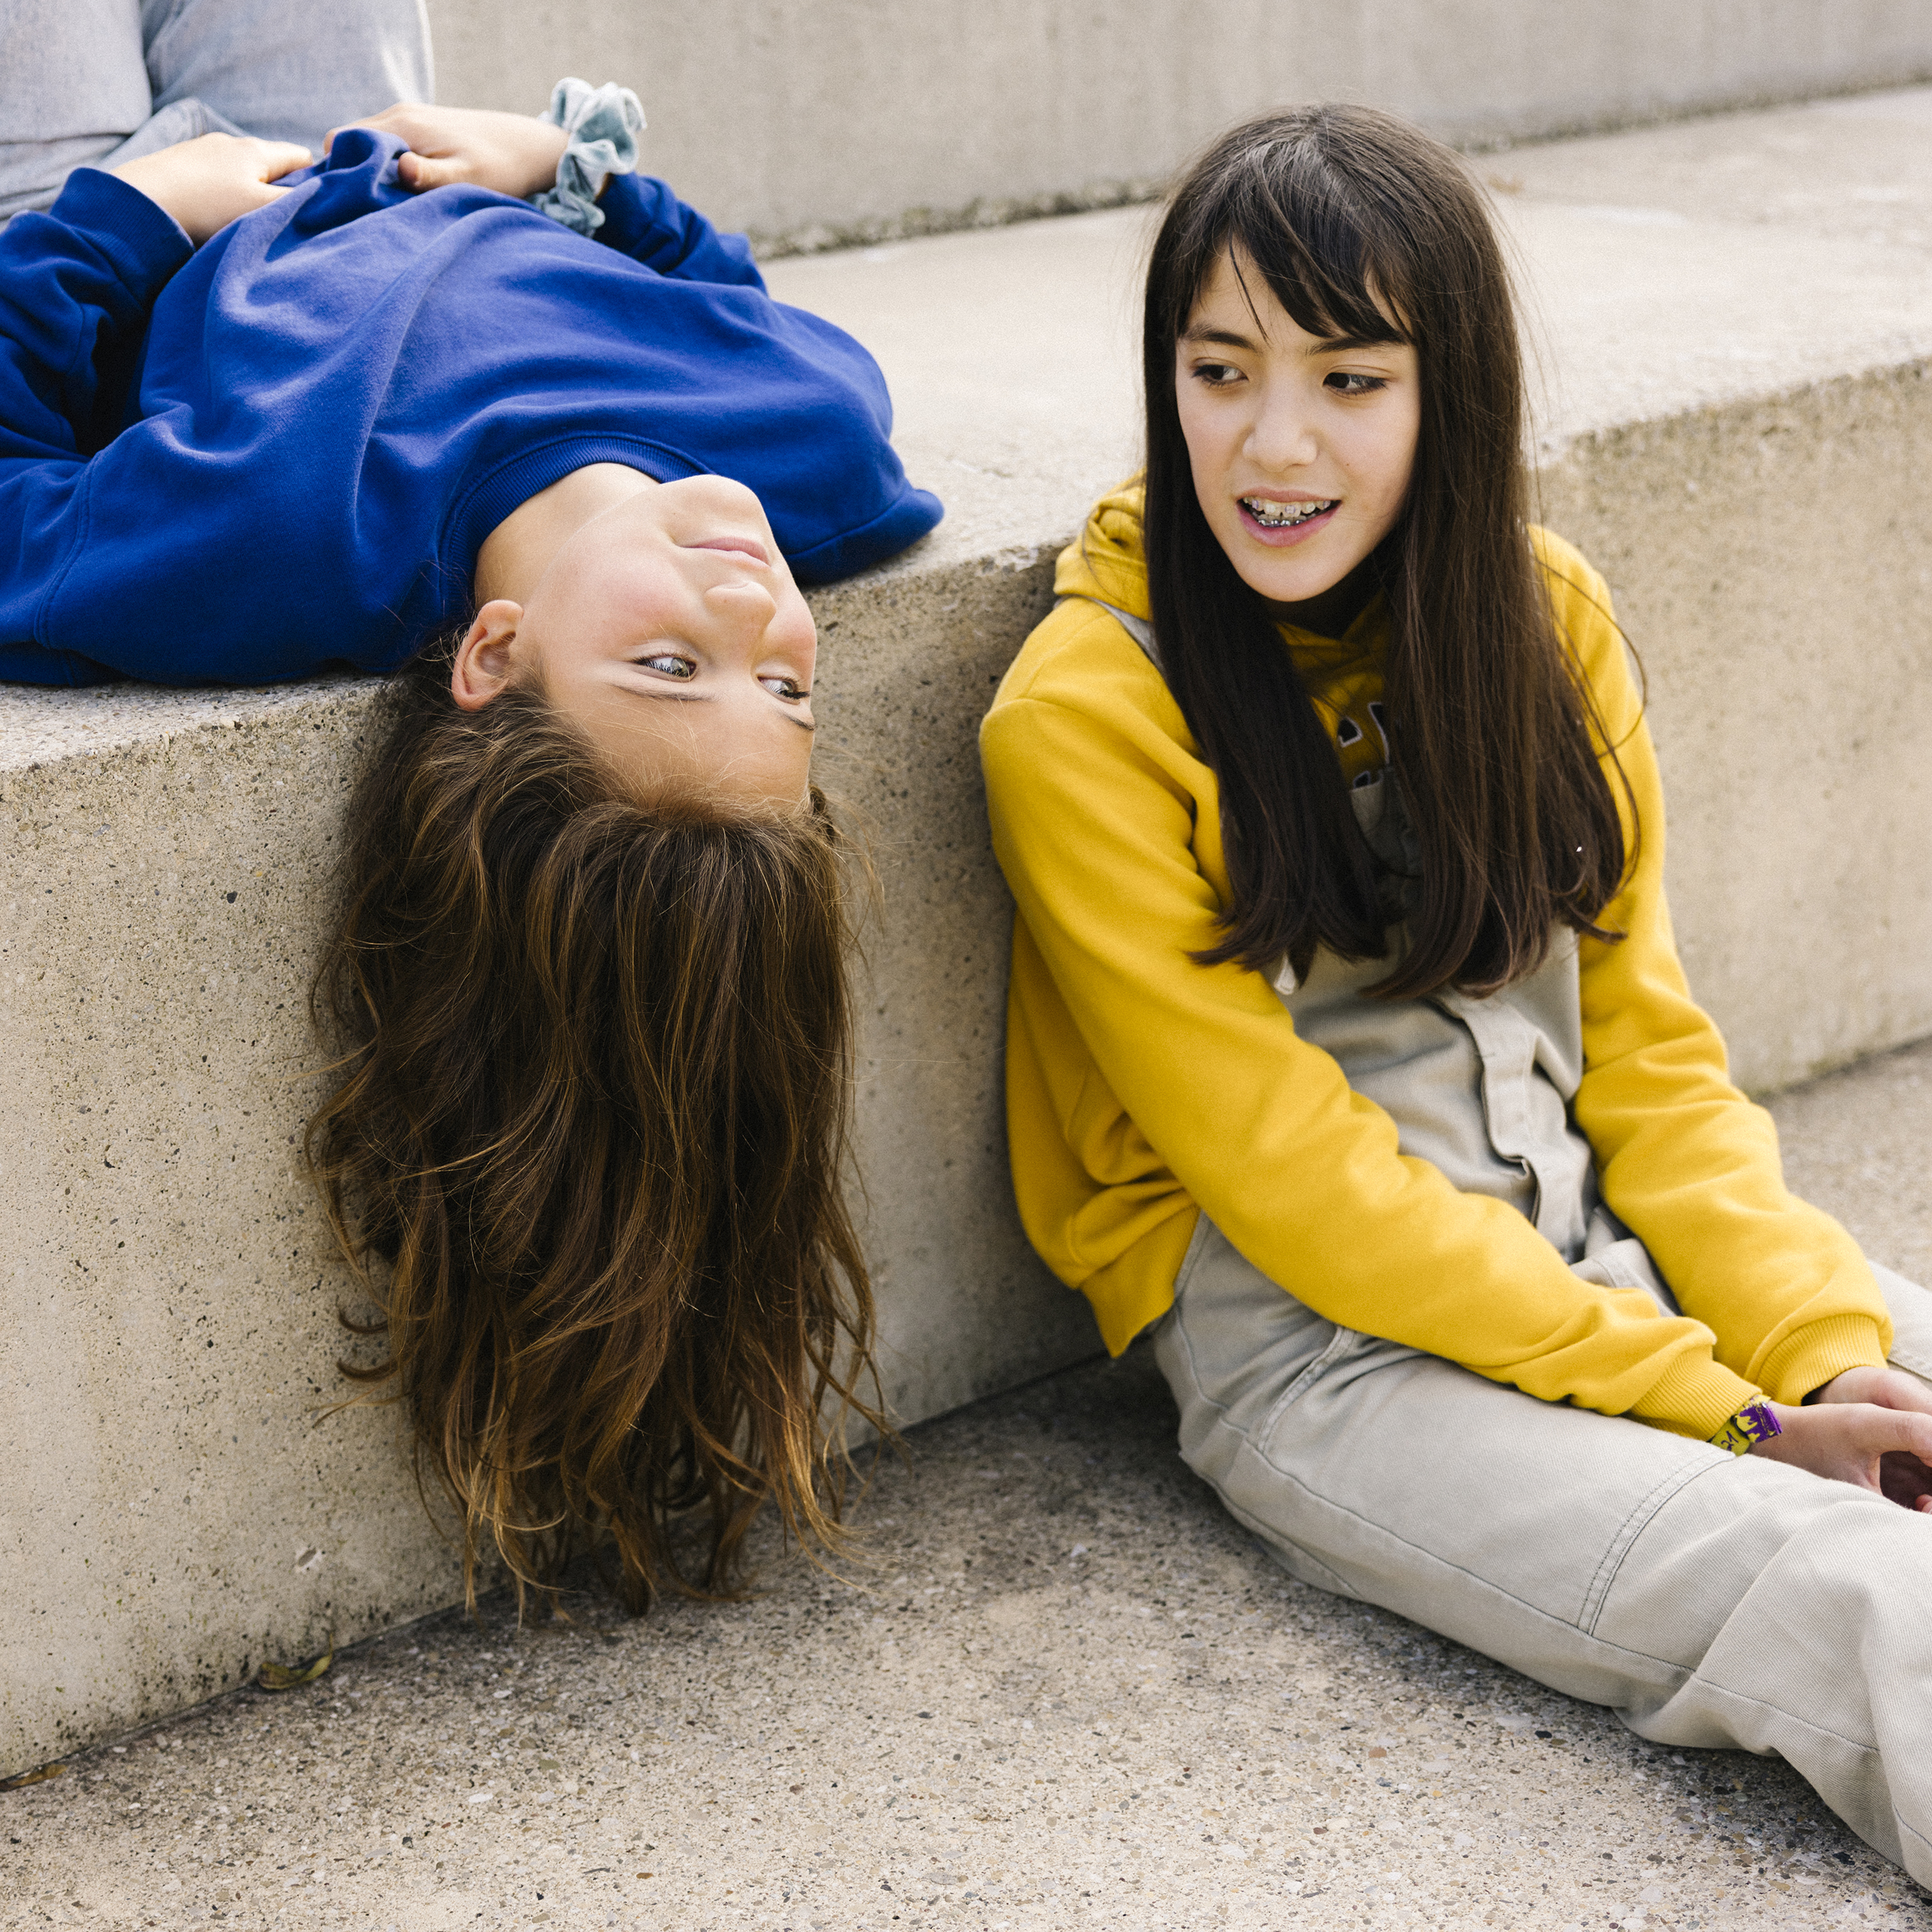 Zwei Jugendliche unterhalten sich auf einer Betontreppe, dabei sitzt eine an der Stufe während die Andere auf dem Rücken auf der Stufe liegt und ihren Kopf herunterhängen lässt.